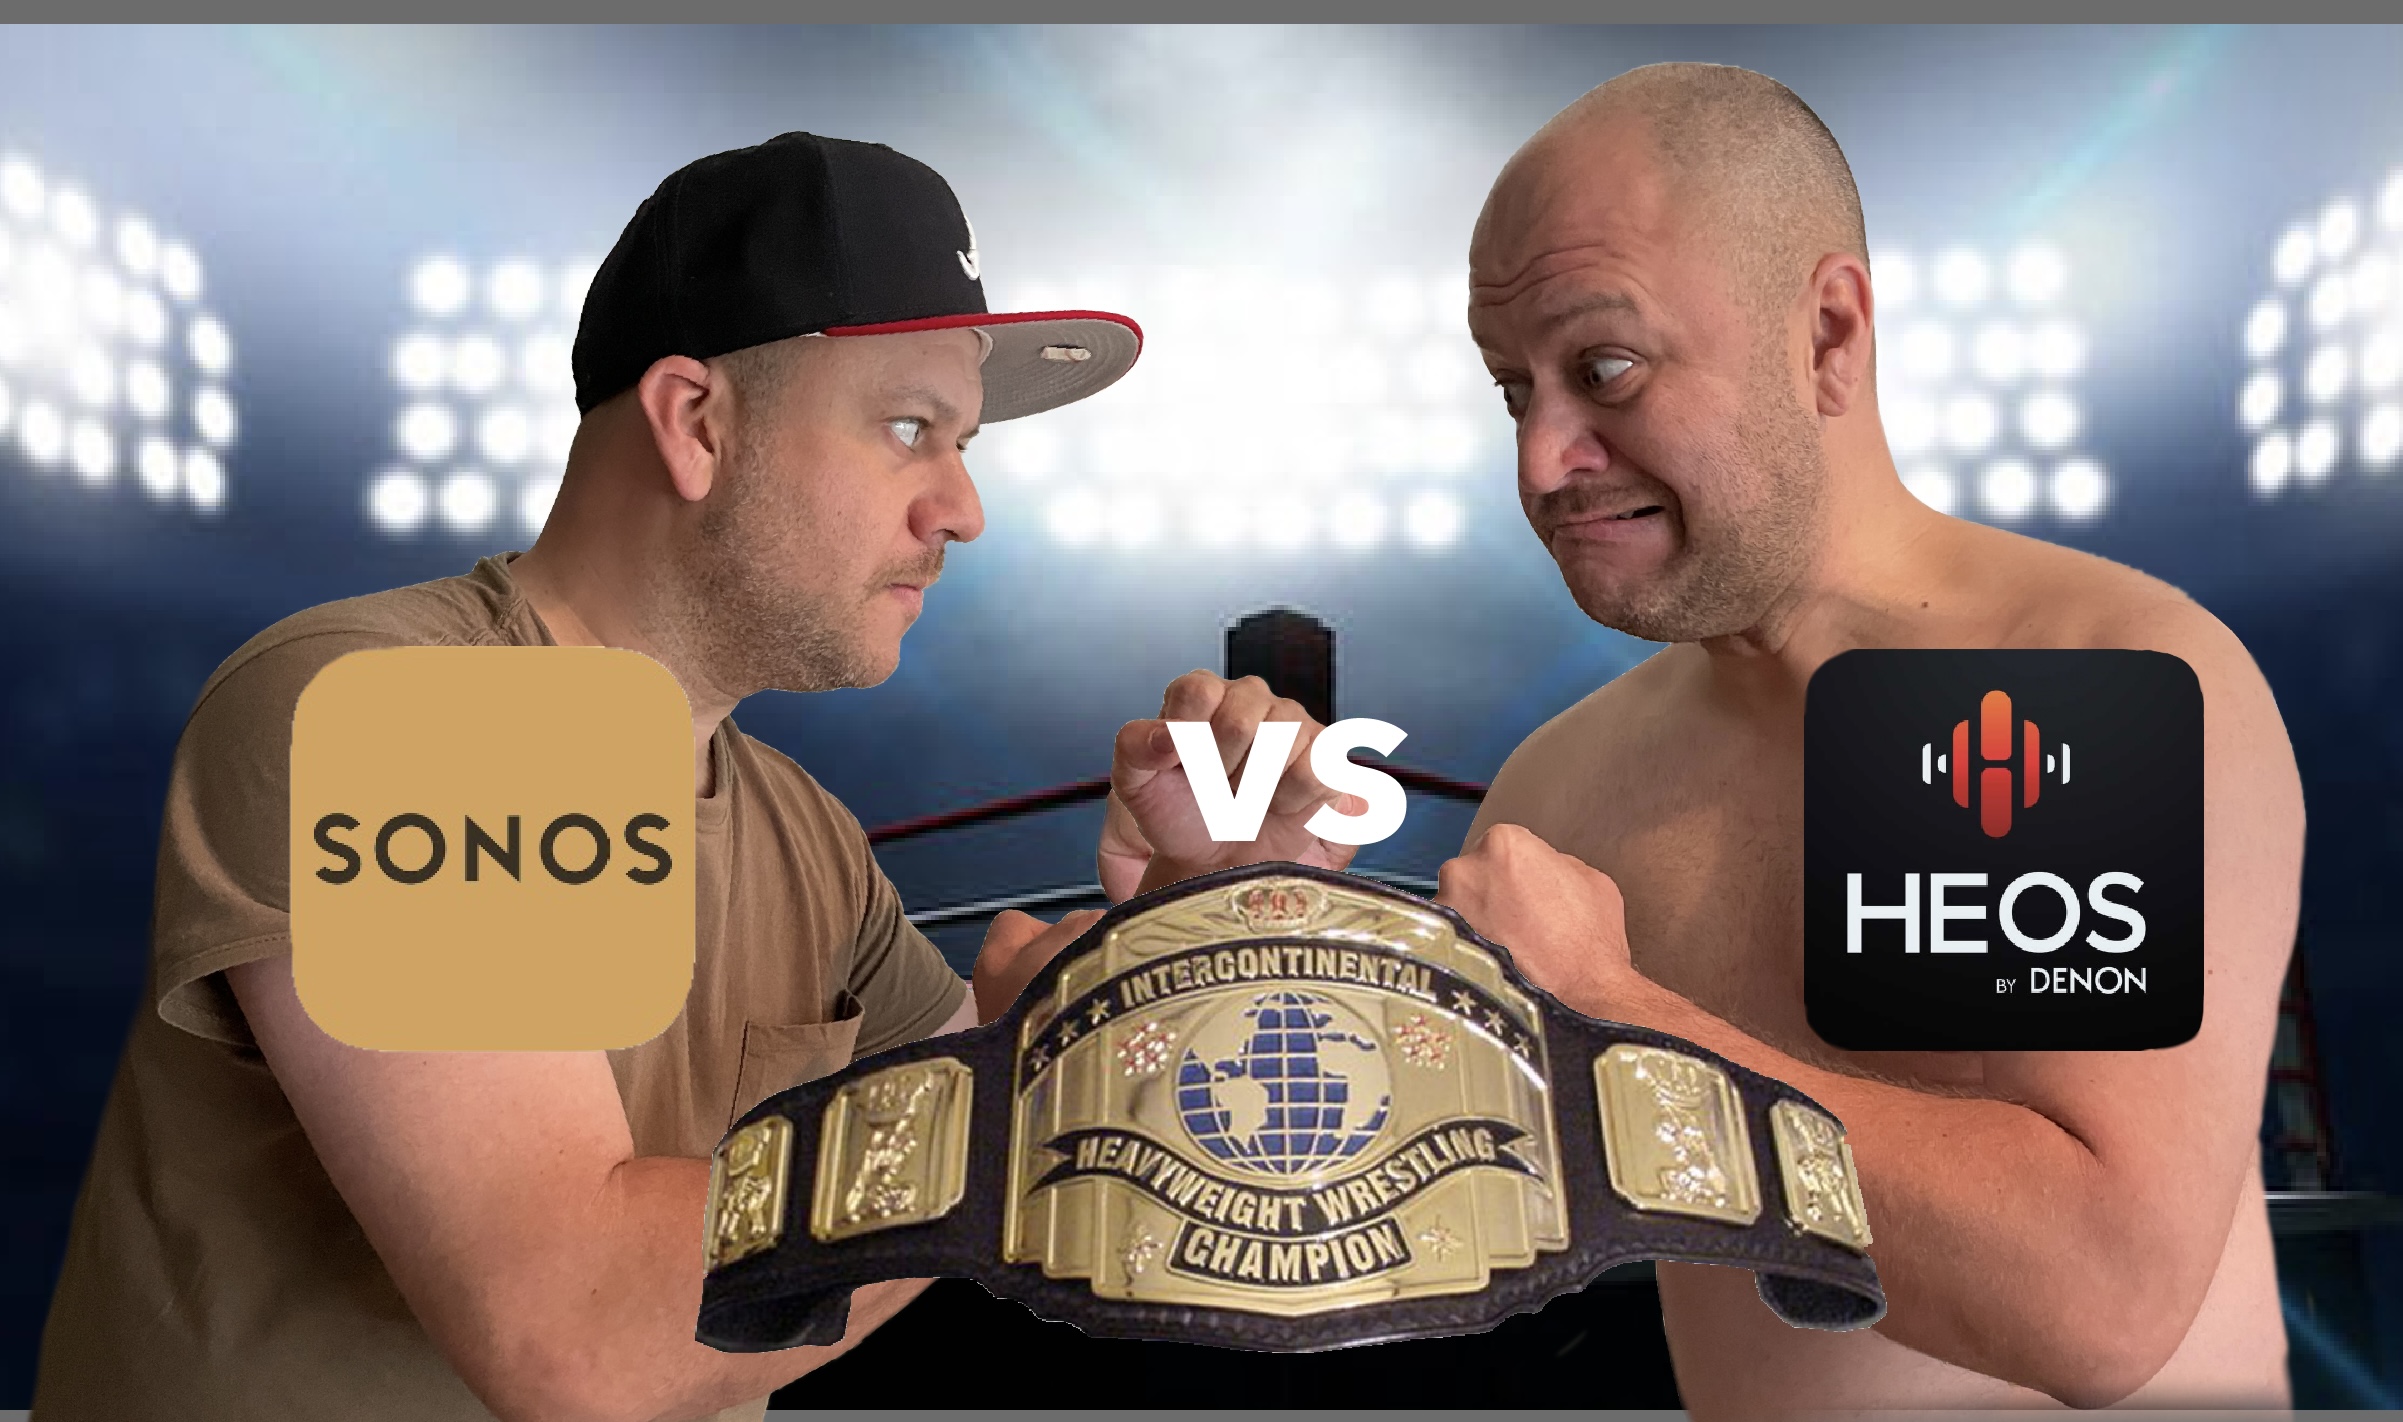 Heos vs Sonos